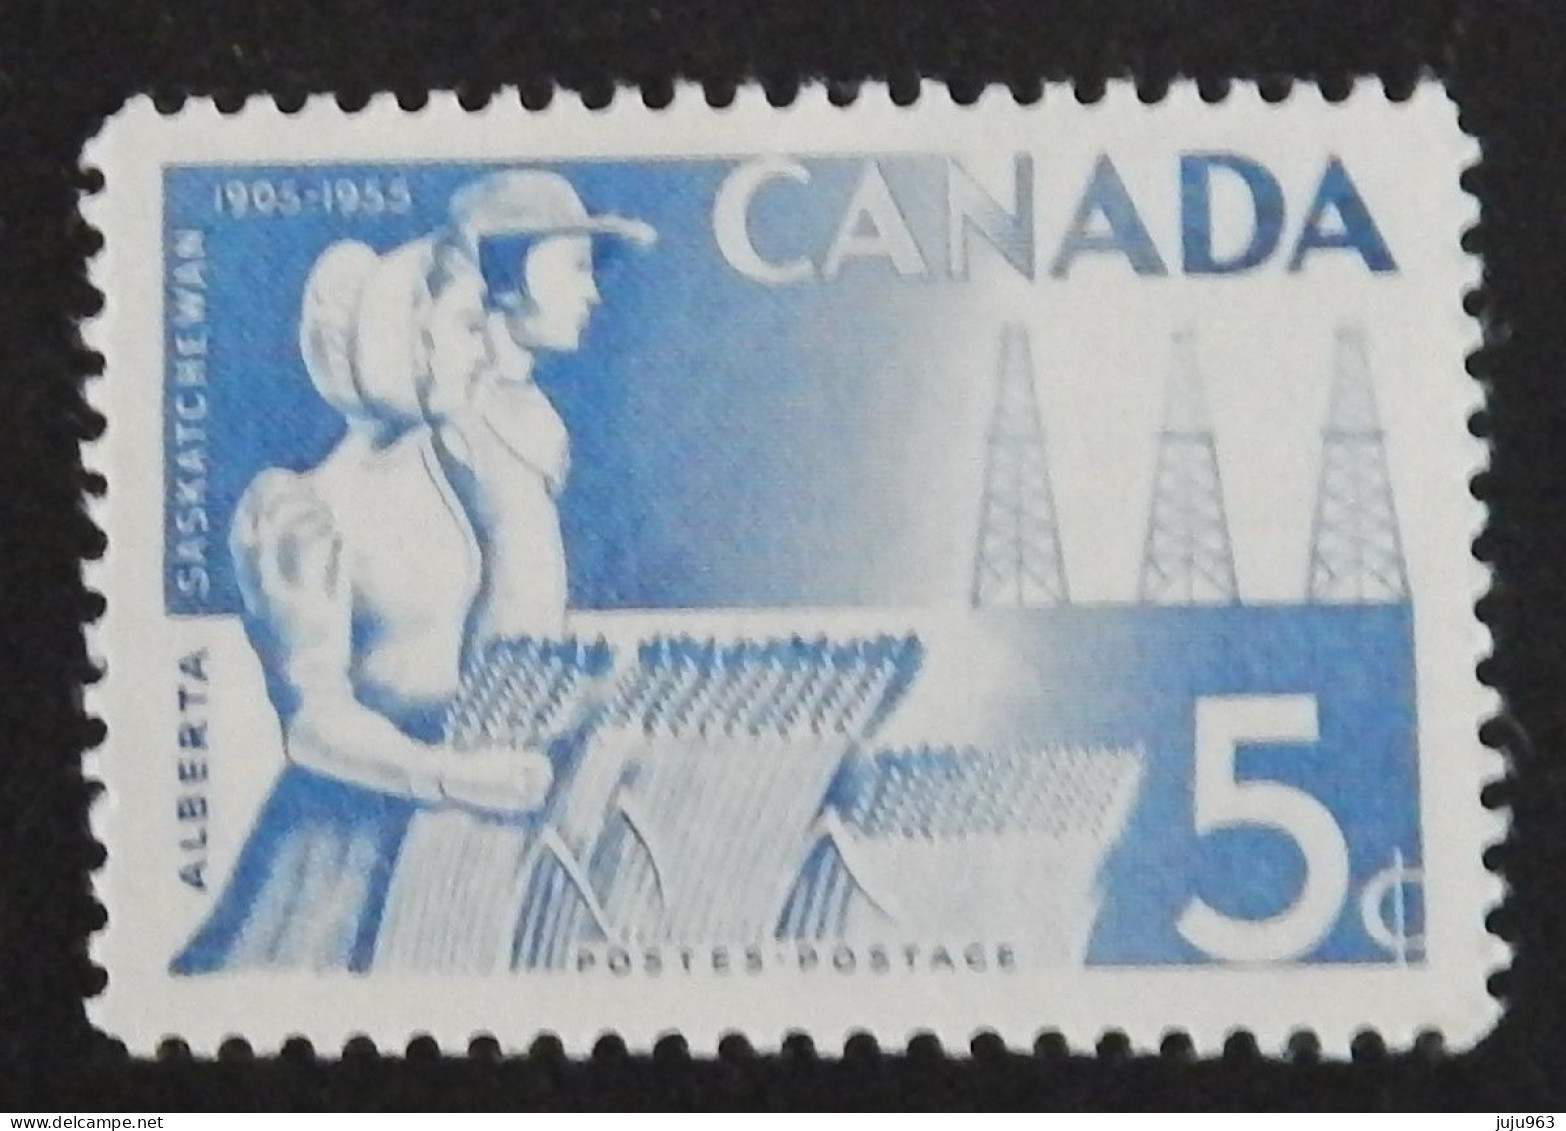 CANADA YT 282 NEUF**MNH  ANNEE 1955 - Ongebruikt